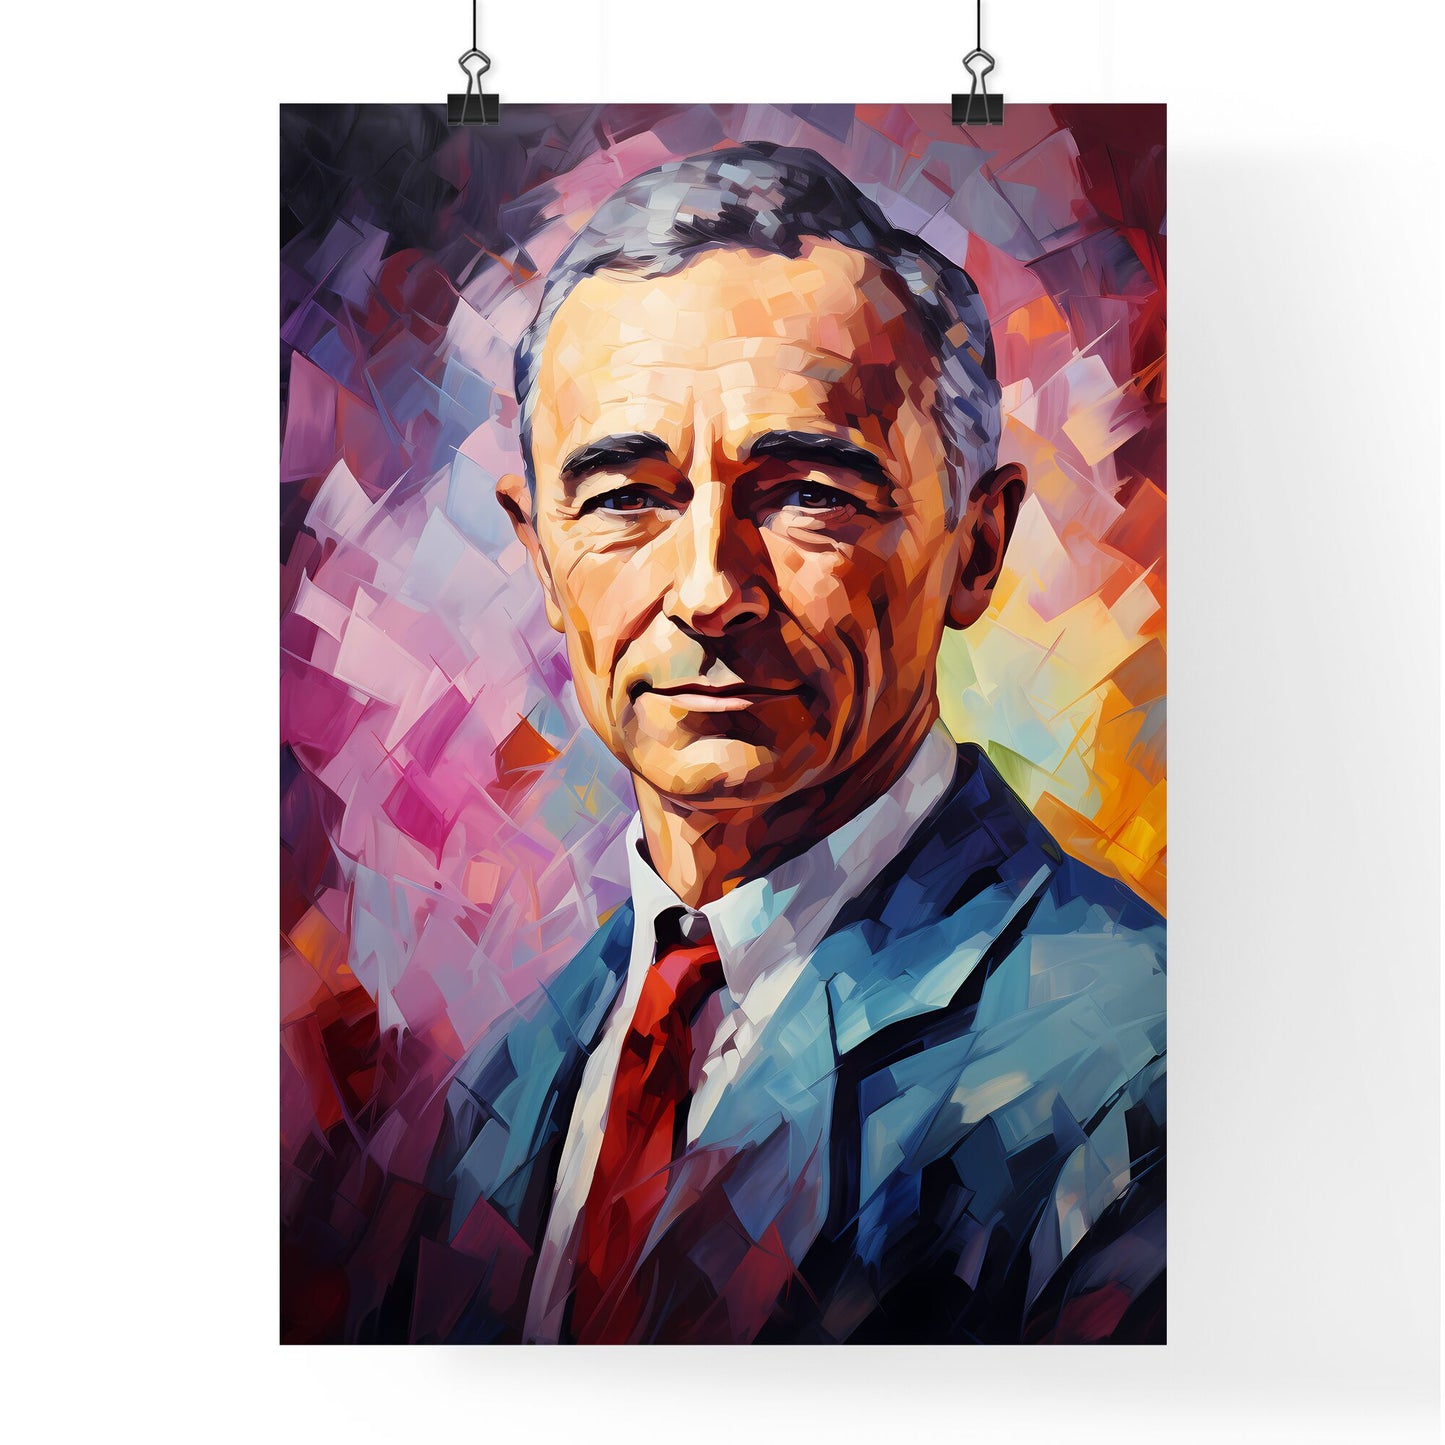 J. Robert Oppenheimer - A Painting Of A Man Default Title